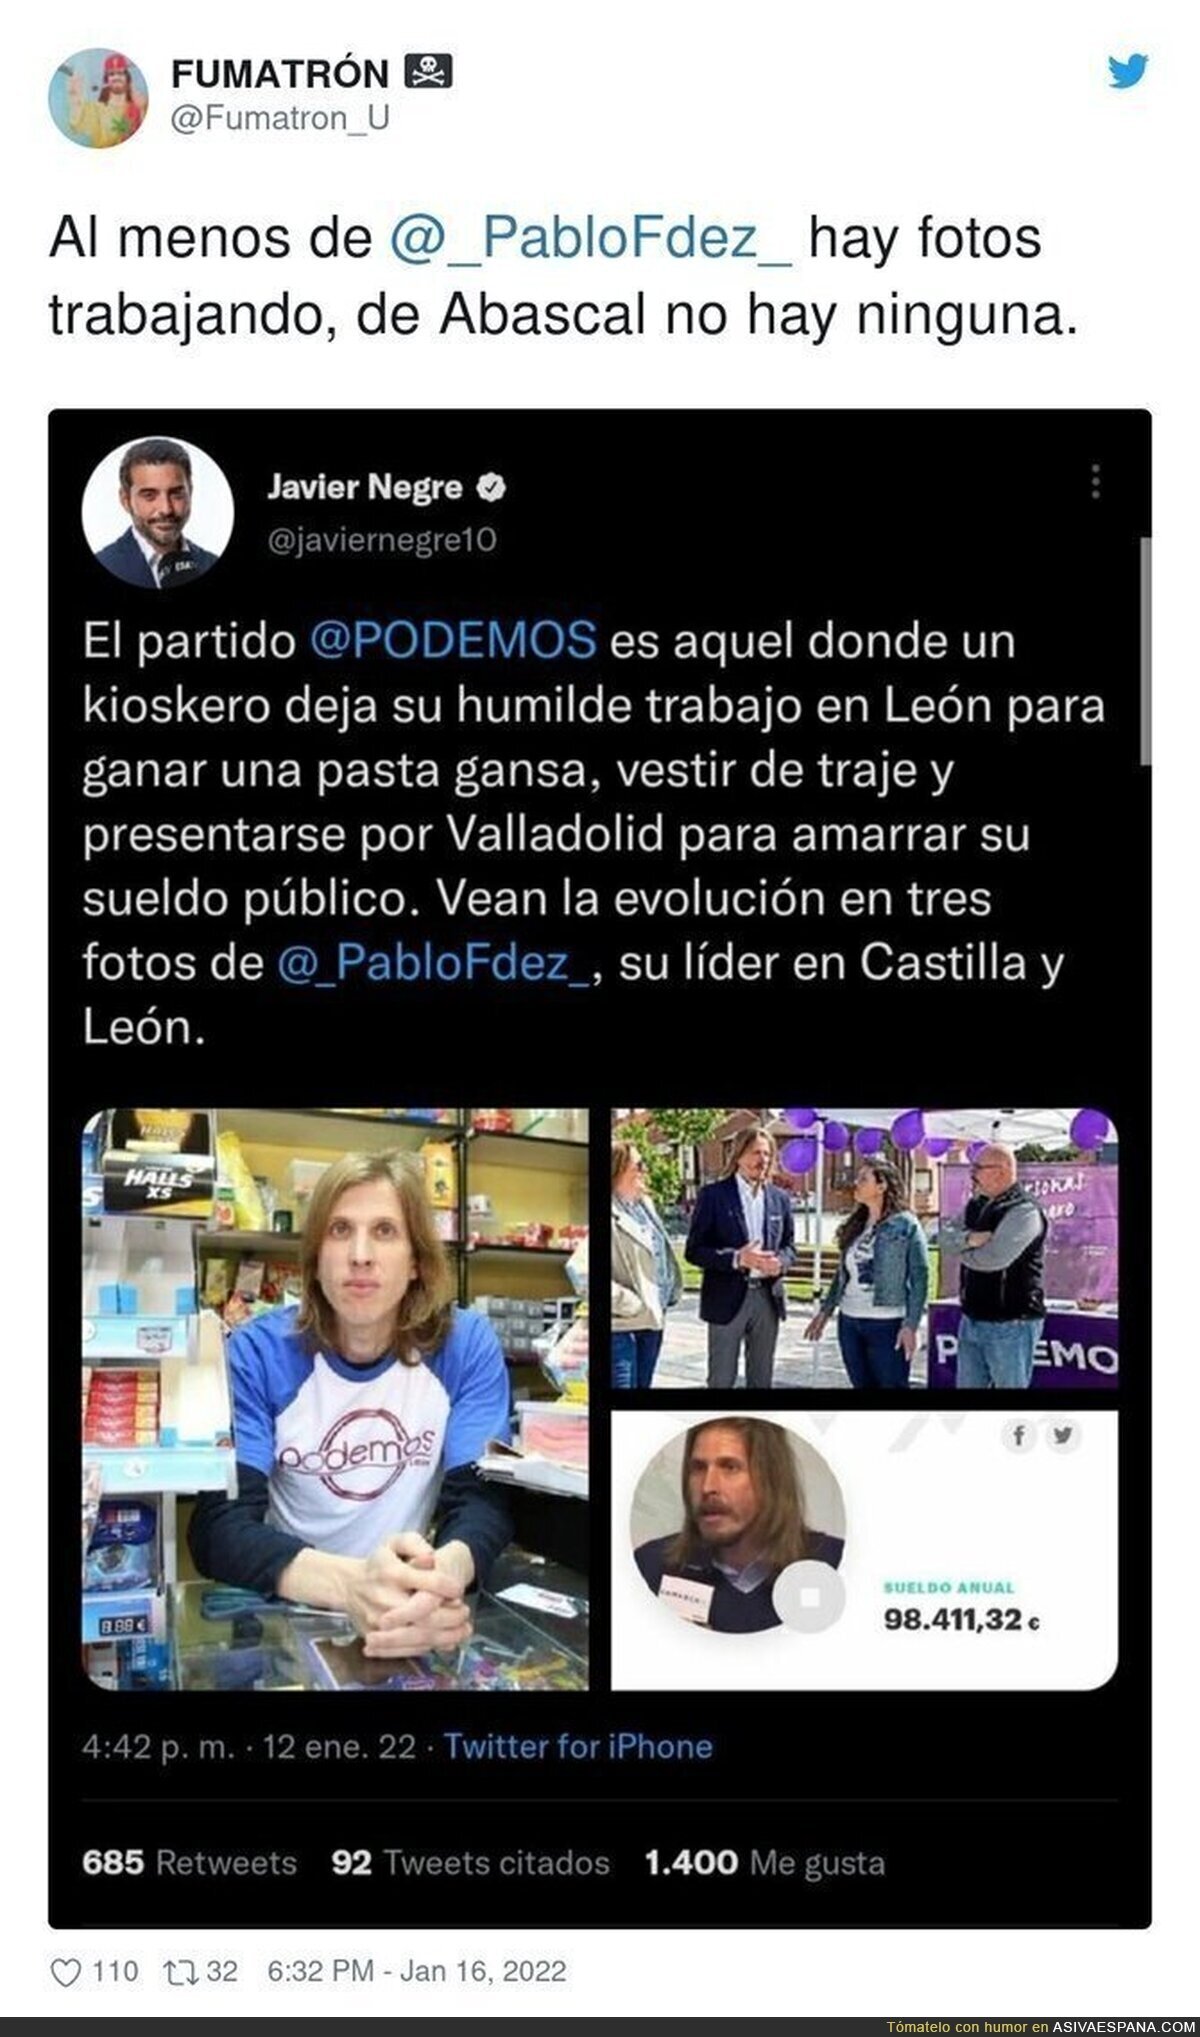 Javier Negre intenta humillar a Pablo Fernández (Podemos) y se lleva una respuesta brutal